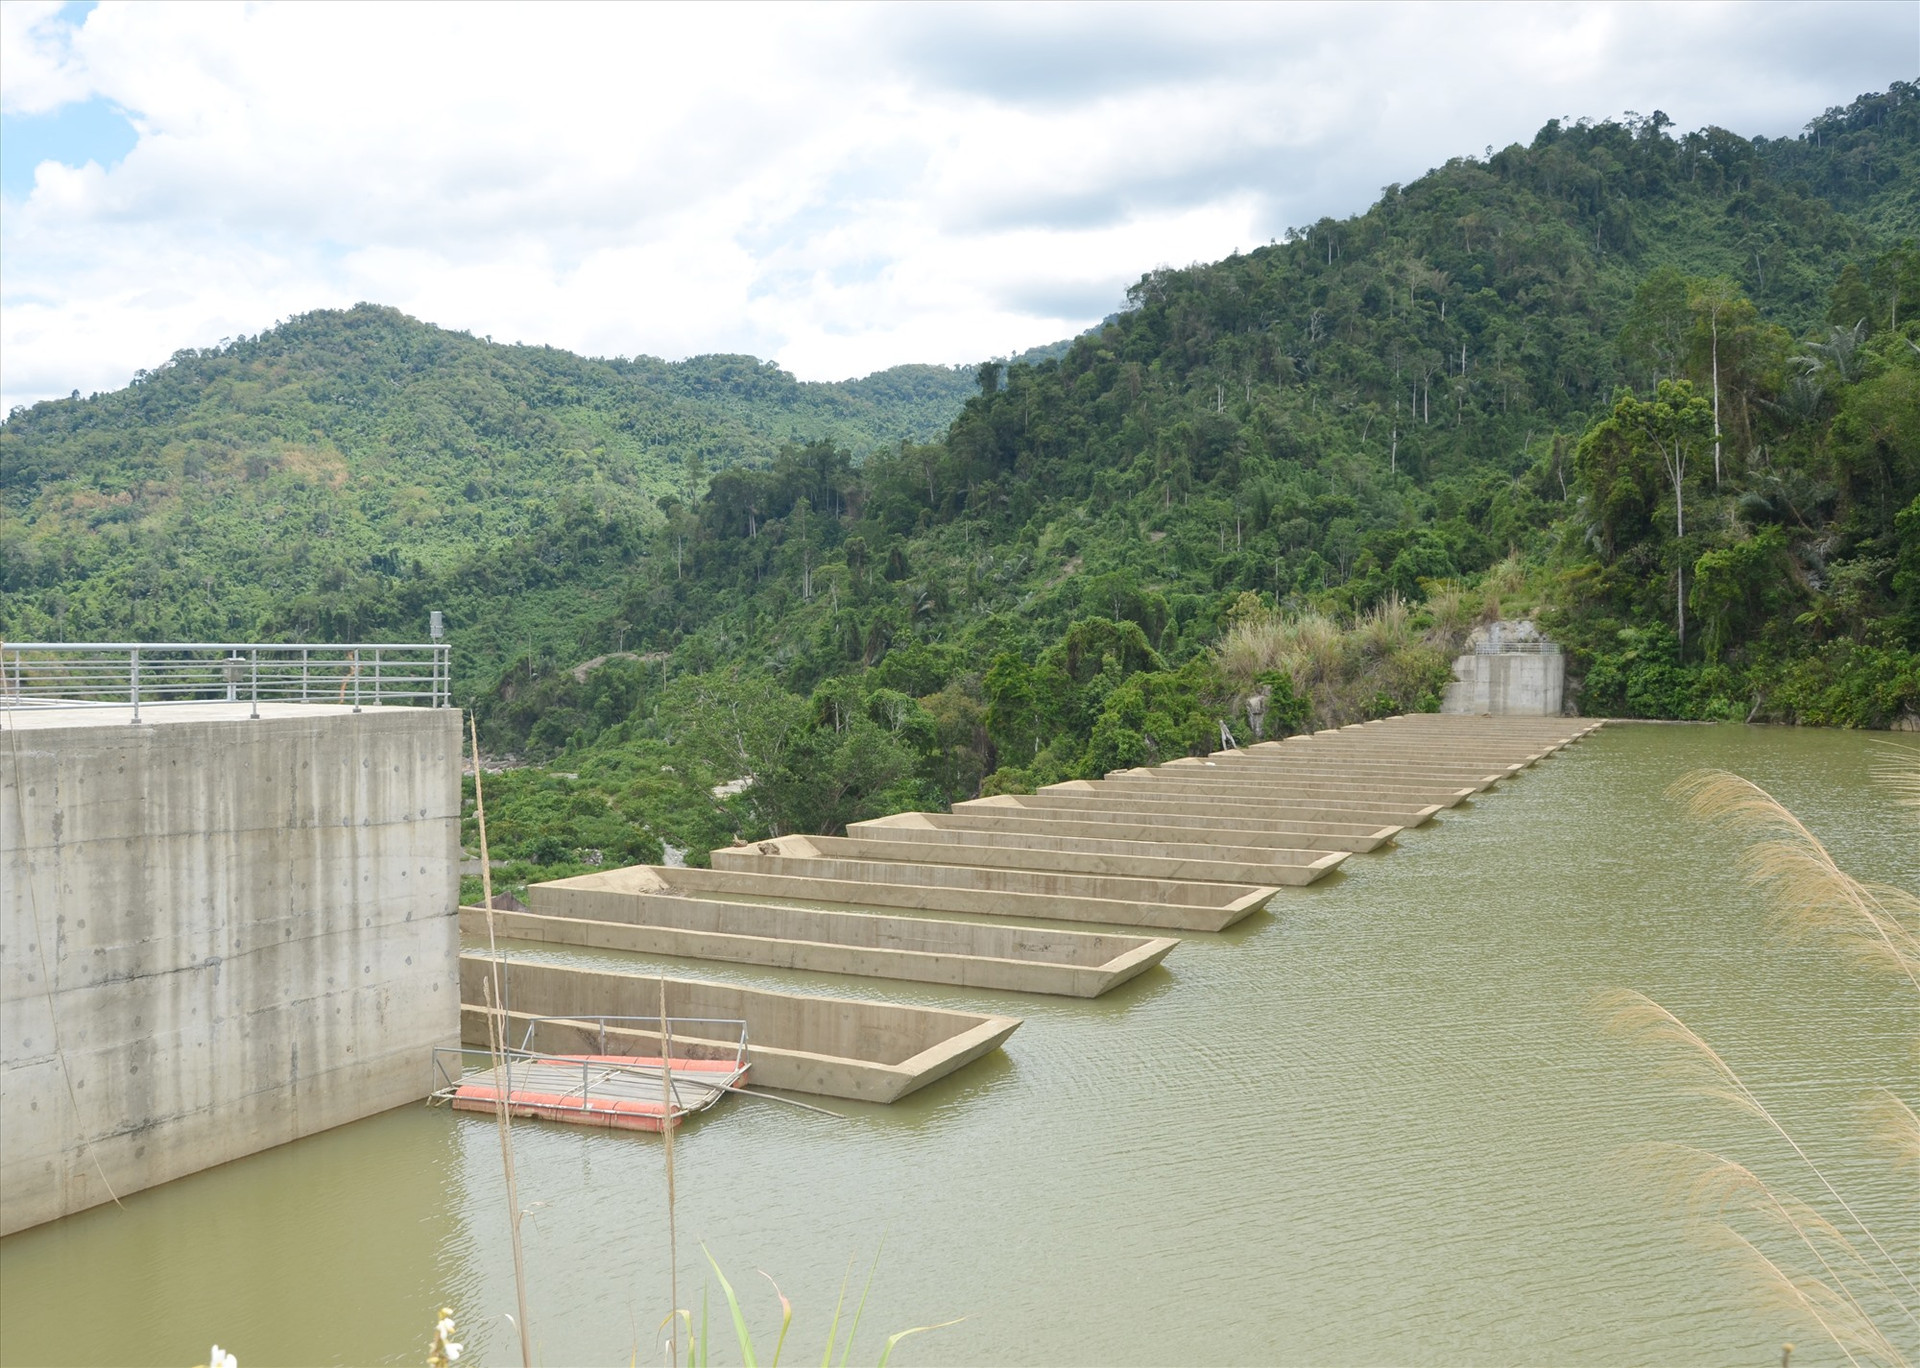 Hồ thủy điện ở miền núi tham gia điều tiết nước phục vụ sản xuất cho vùng hạ du. Ảnh:H.P